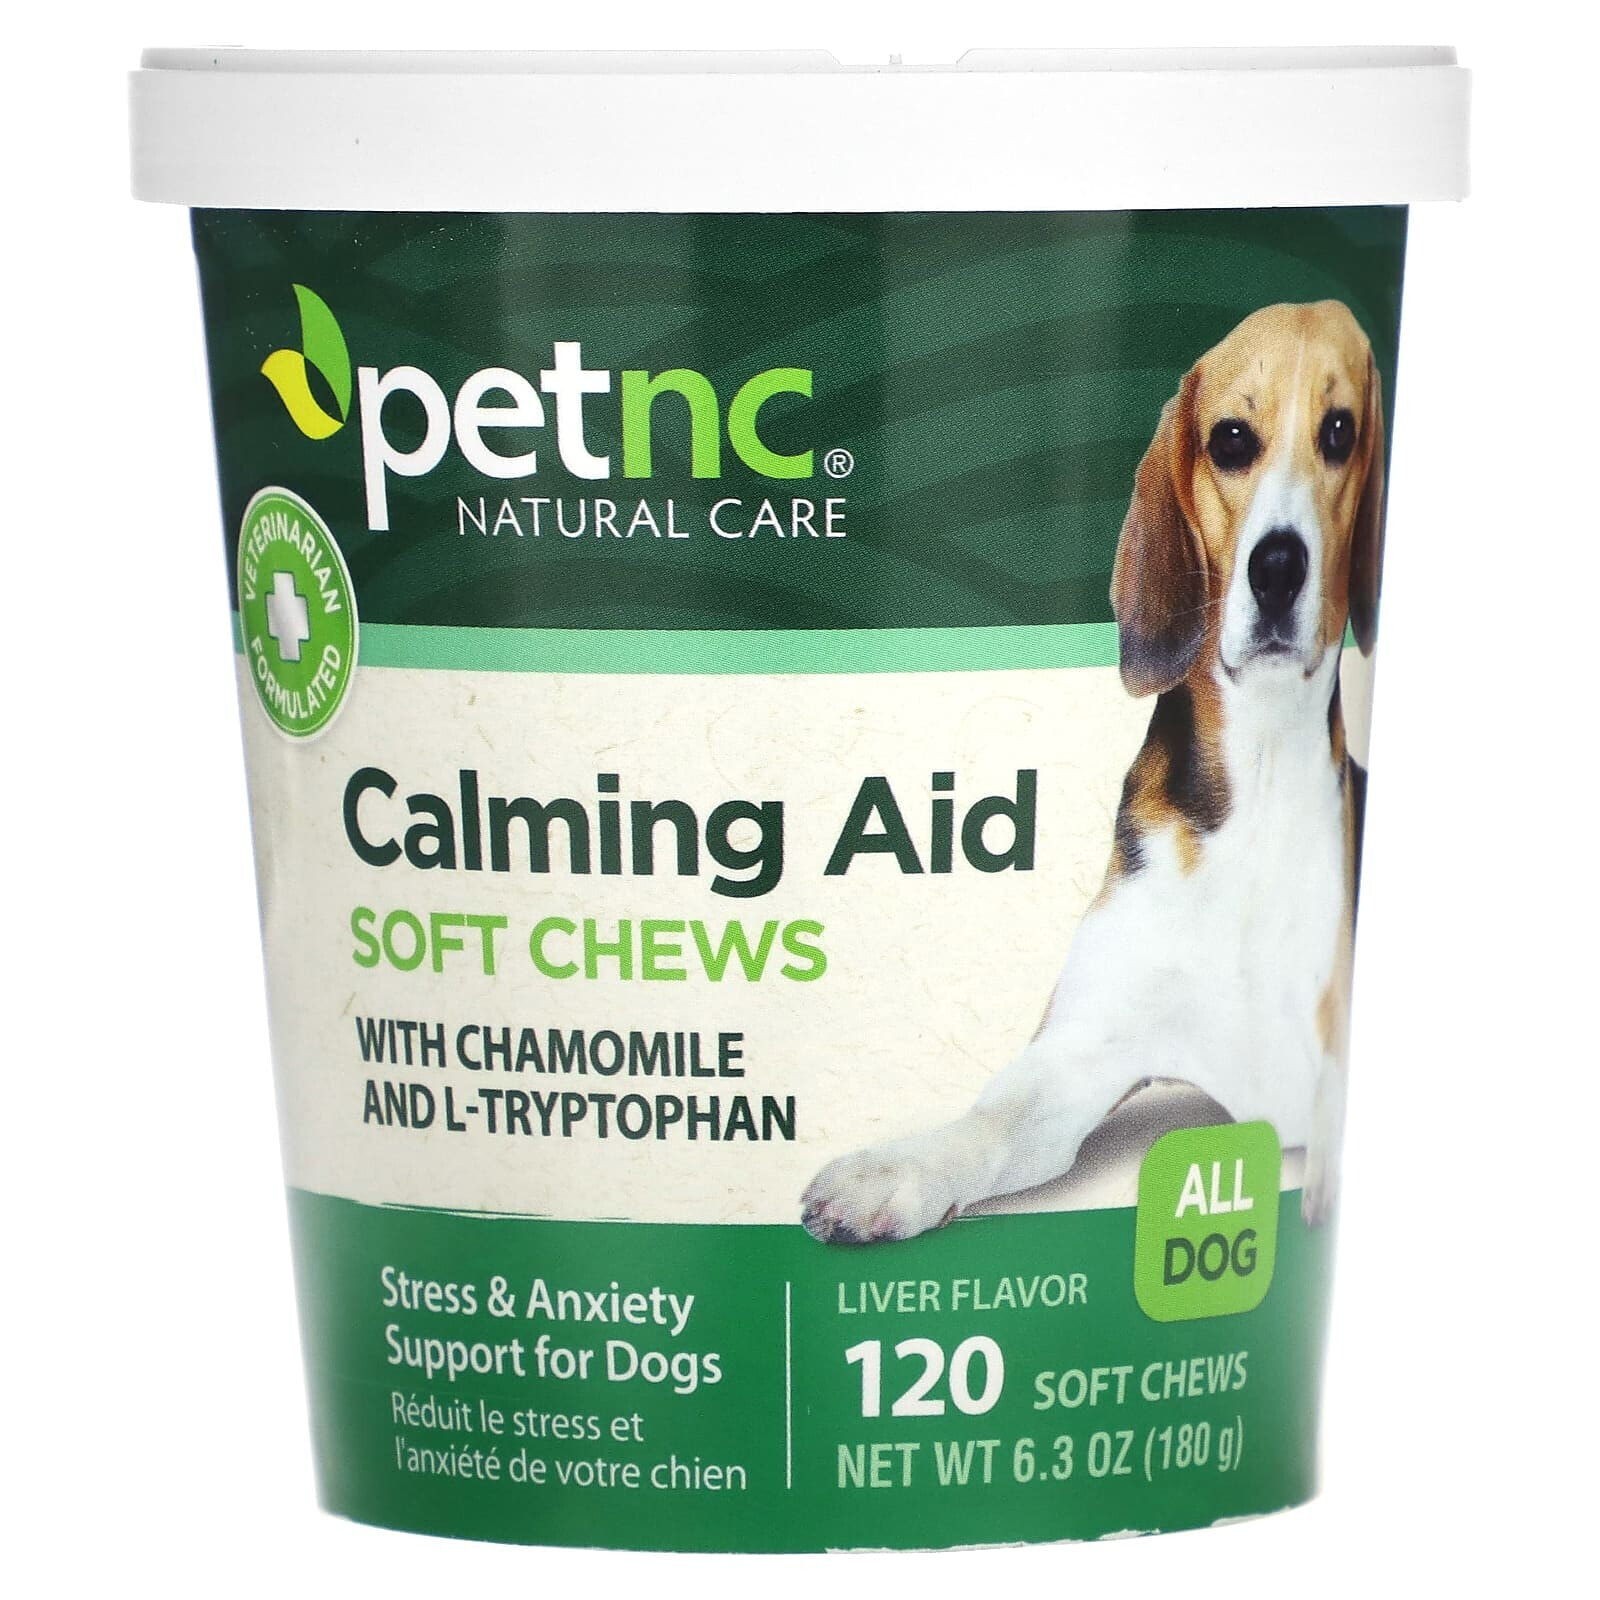 petnc NATURAL CARE, Pet Natural Care, мягкий, жевательный, успокаивающий препарат, со вкусом печенки, для всех собак, 120 мягких жевательных таблеток (Товар снят с продажи) 